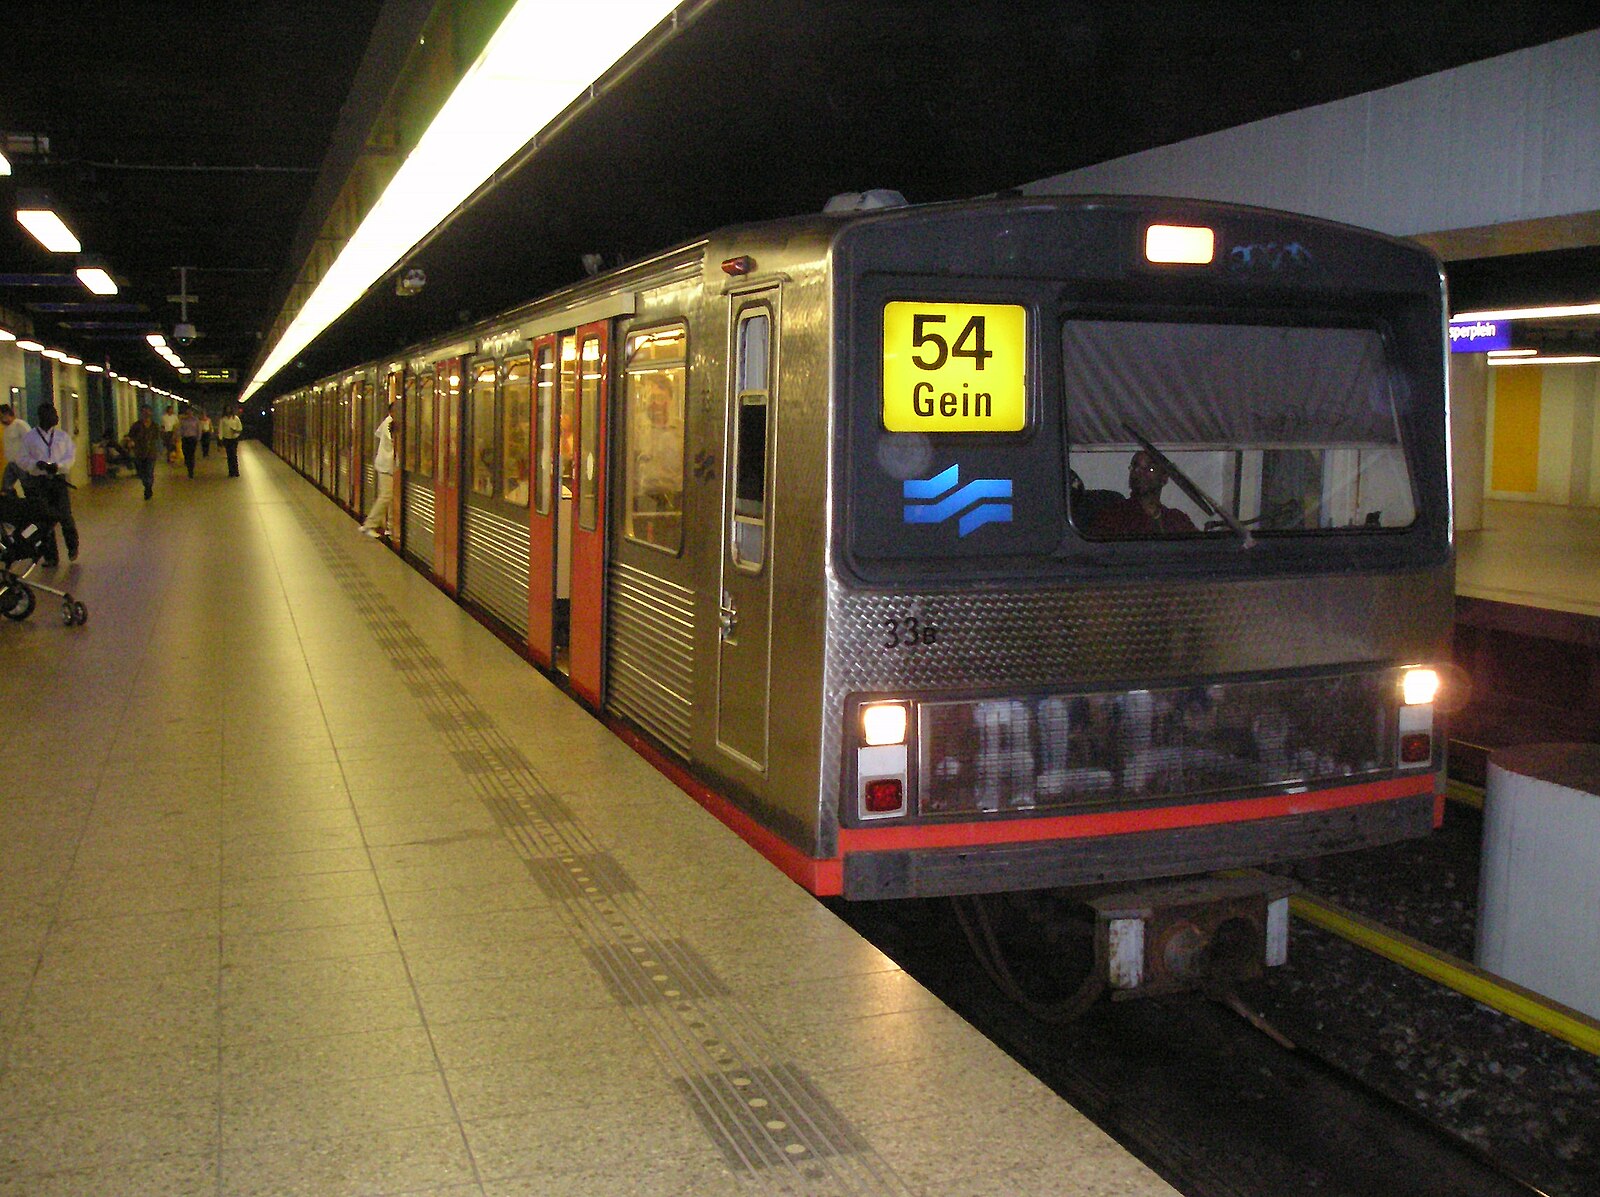 метро калининград